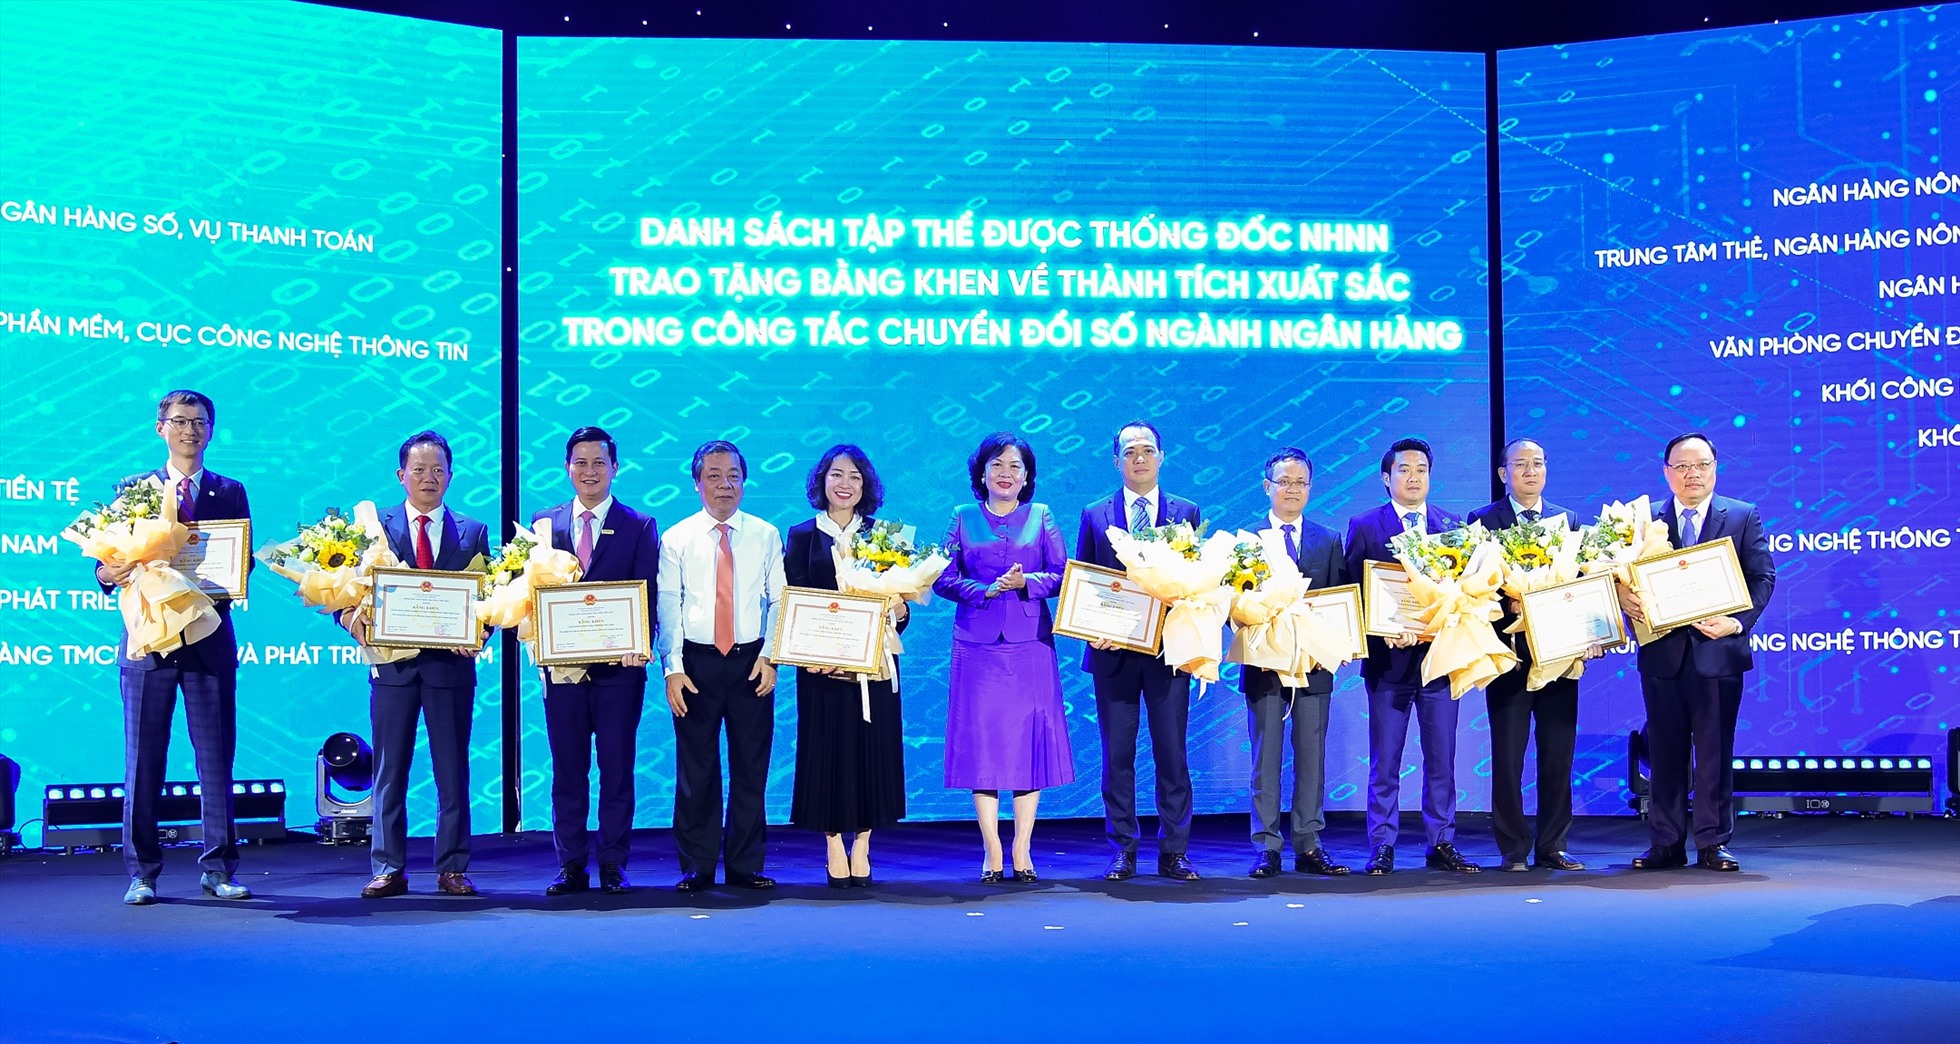 Ông Trần Công Quỳnh Lân – Phó Tổng Giám đốc VietinBank (thứ 3 từ trái qua) đại diện VietinBank nhận Bằng khen của Thống đốc NHNN Việt Nam về thành tích xuất sắc trong công tác chuyển đổi số ngành Ngân hàng. Ảnh: VietinBank